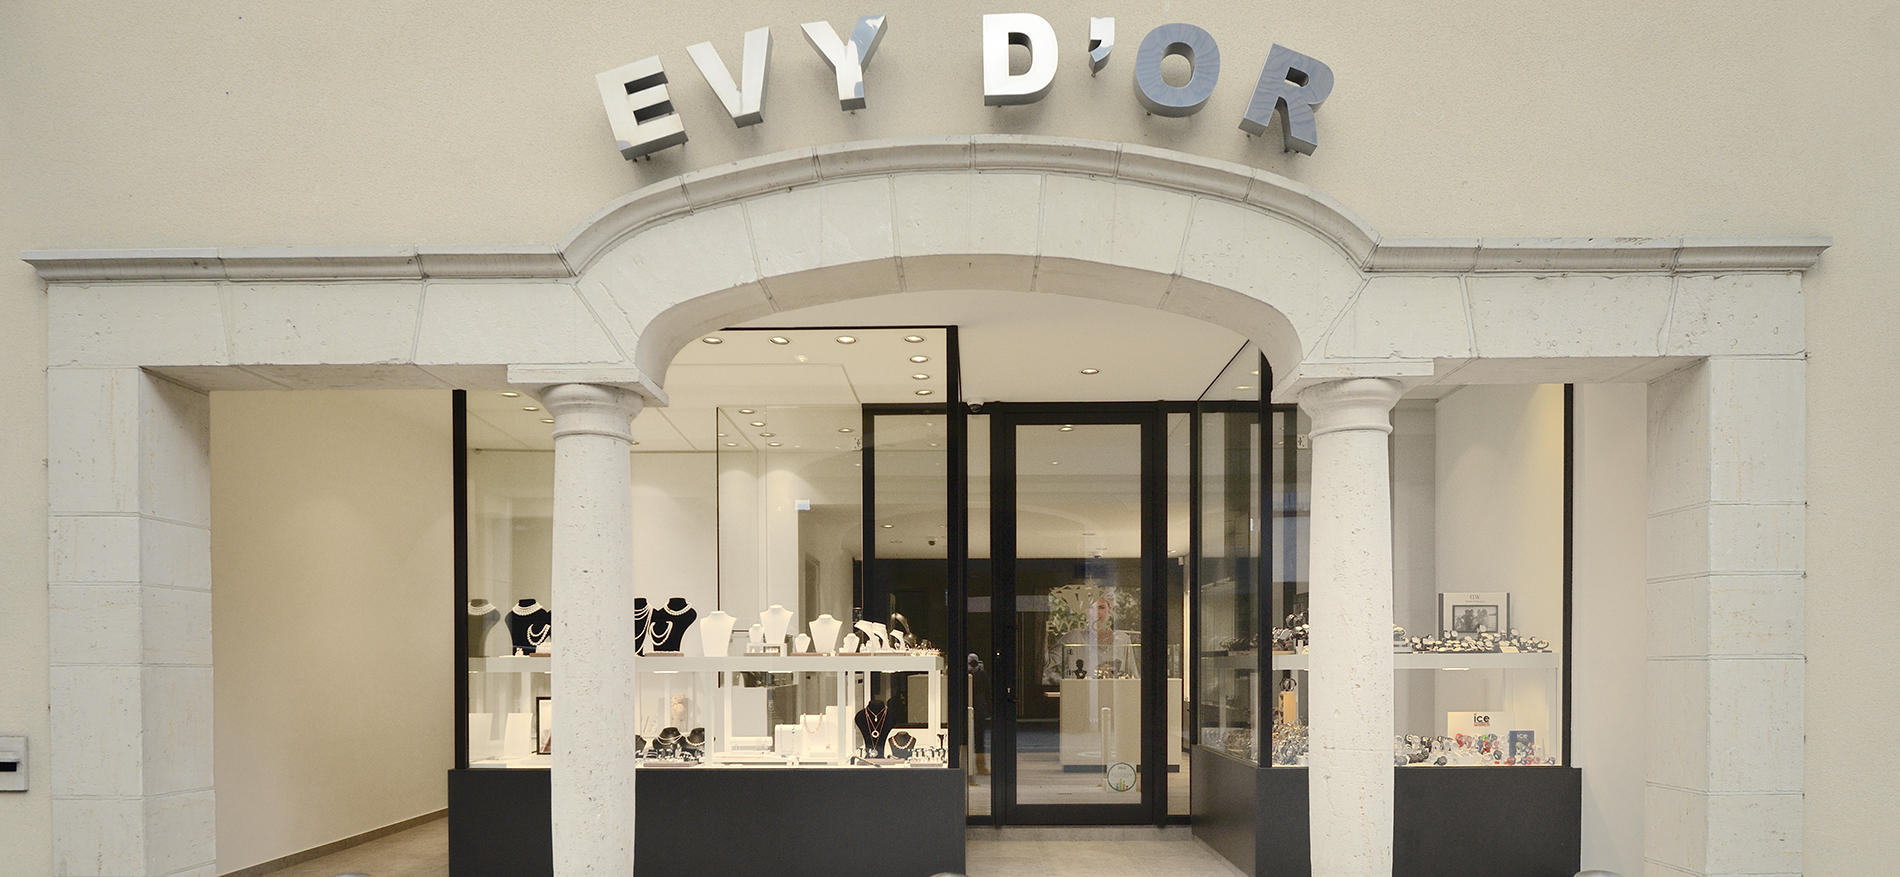 Juwelen Evy d’Or in Ingelmunster (BE) – Neugestaltung Schmuckladen - 